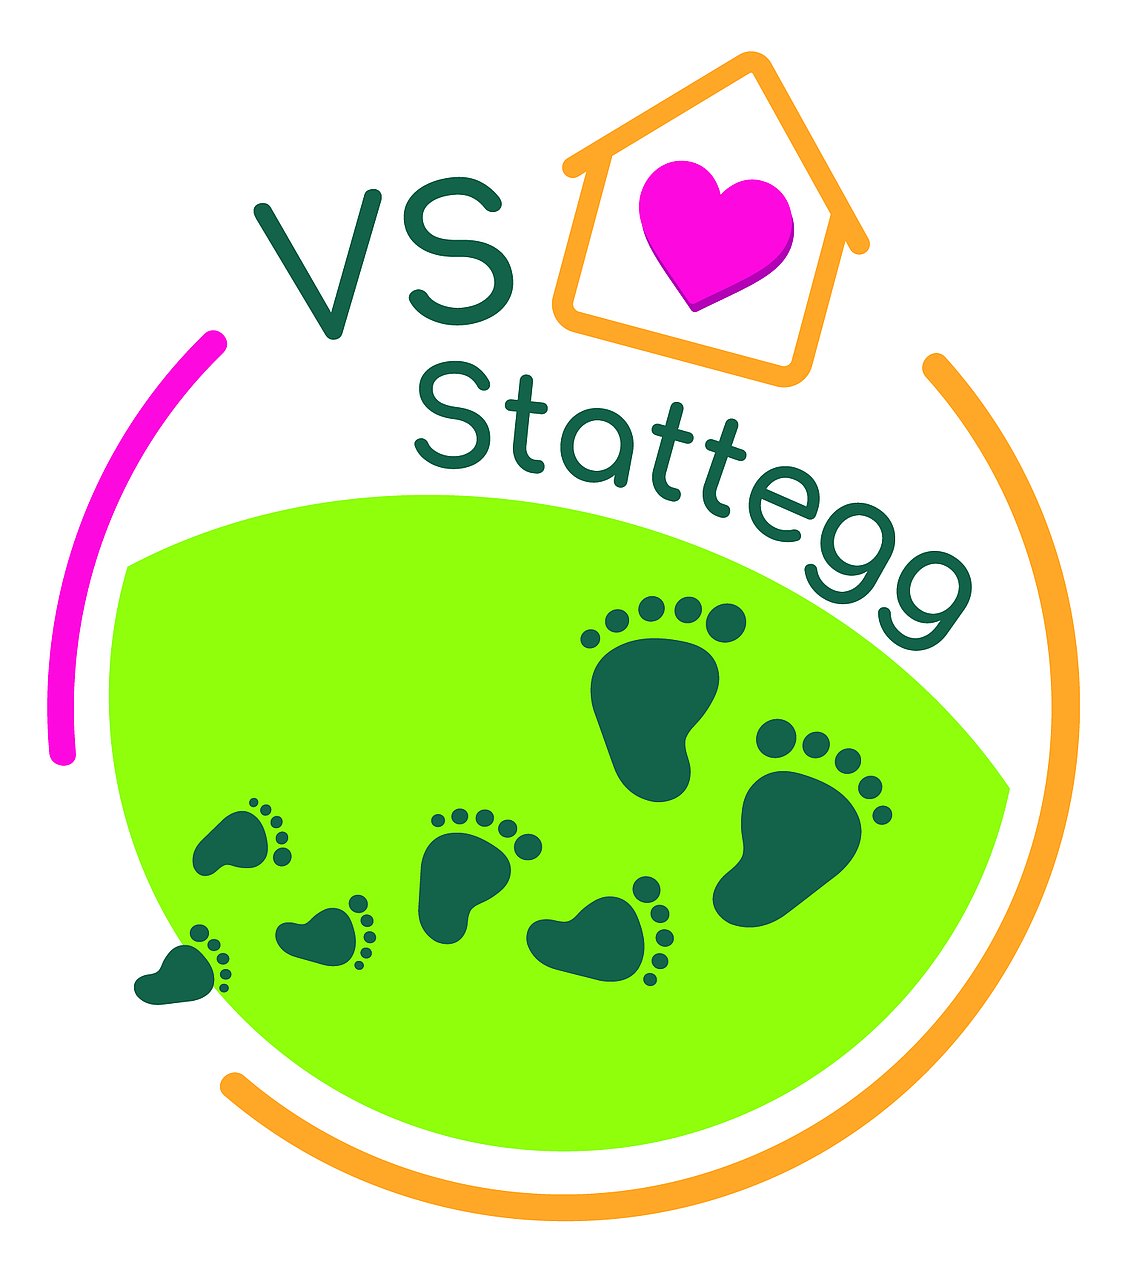 Logo VS Stattegg